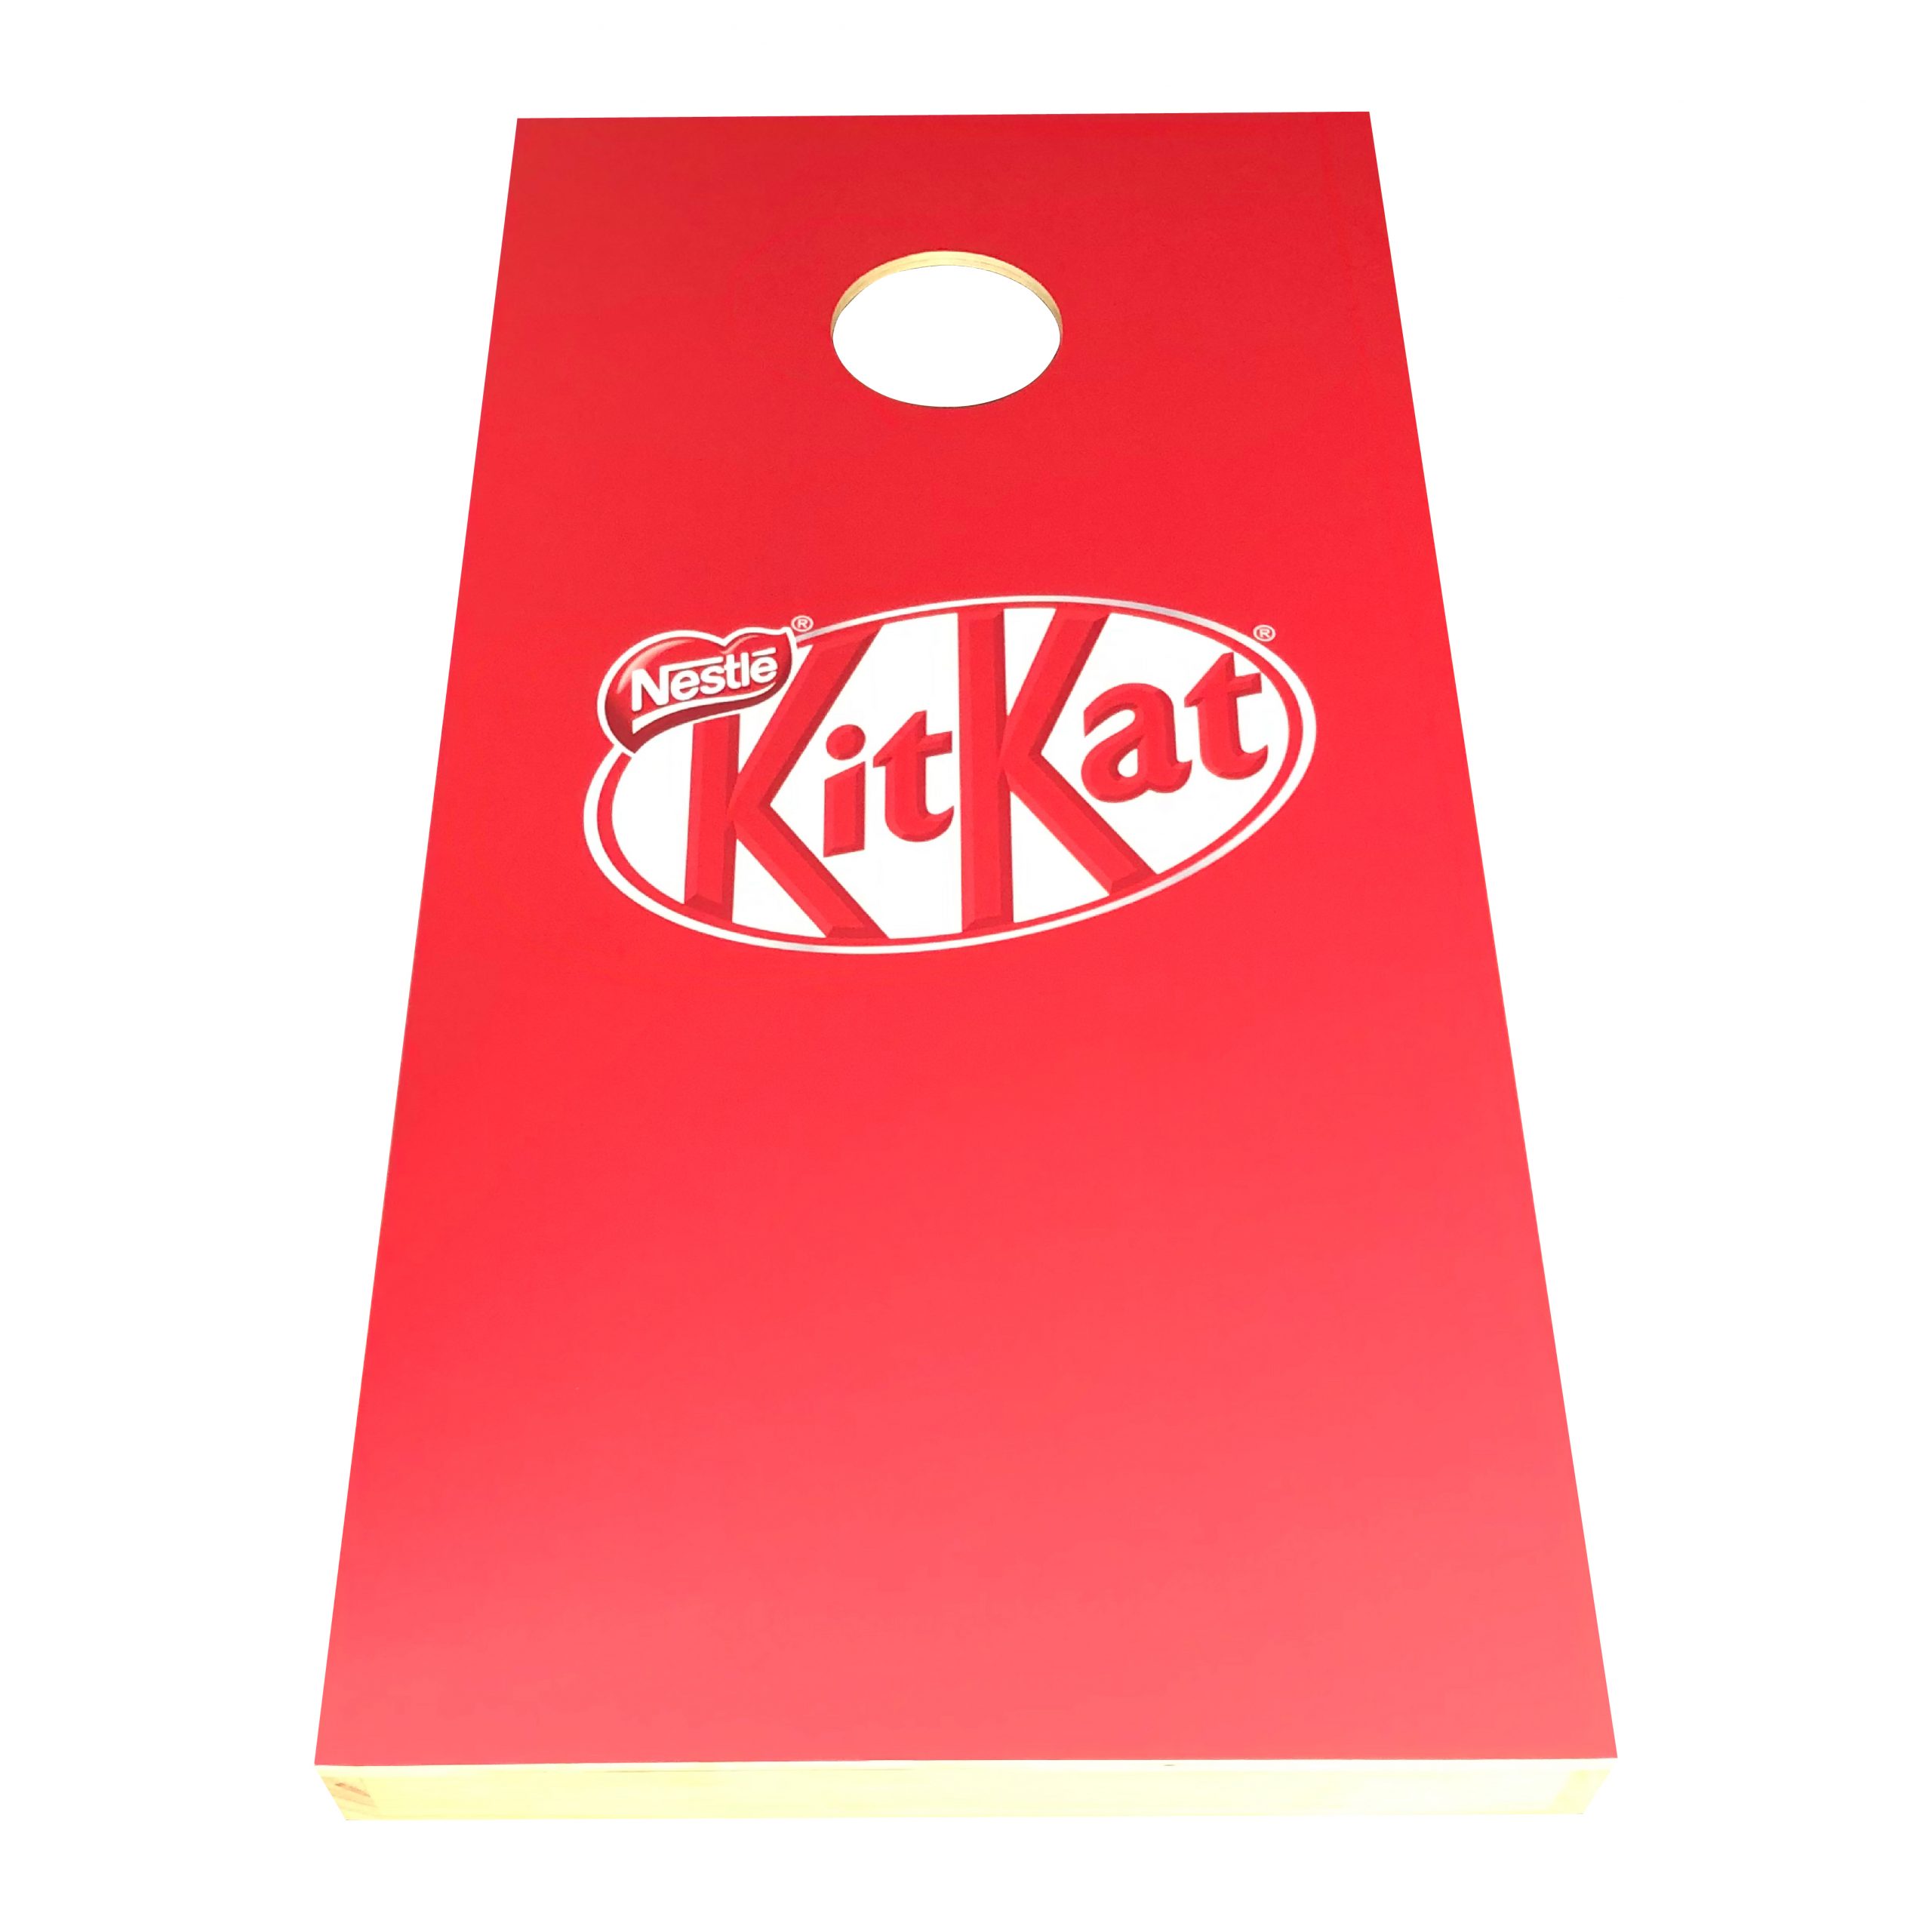 Kitkat Branded Cornhole Board